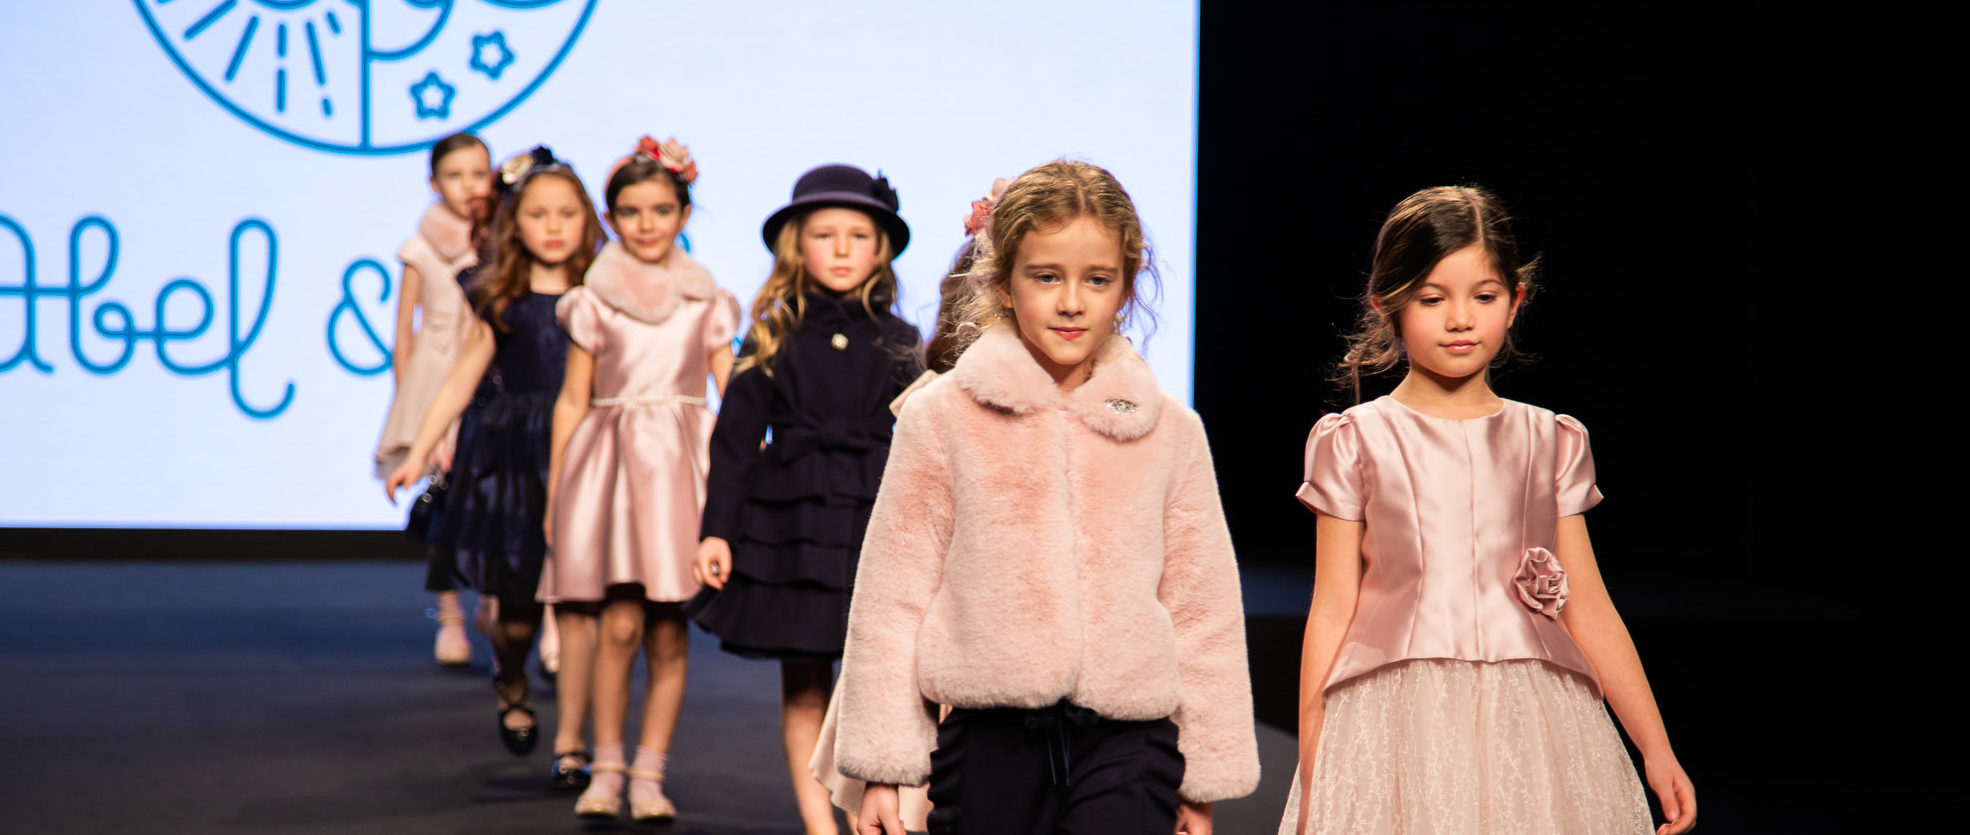 Lo que vimos en FIMI: Tendencias en moda infantil para la próxima